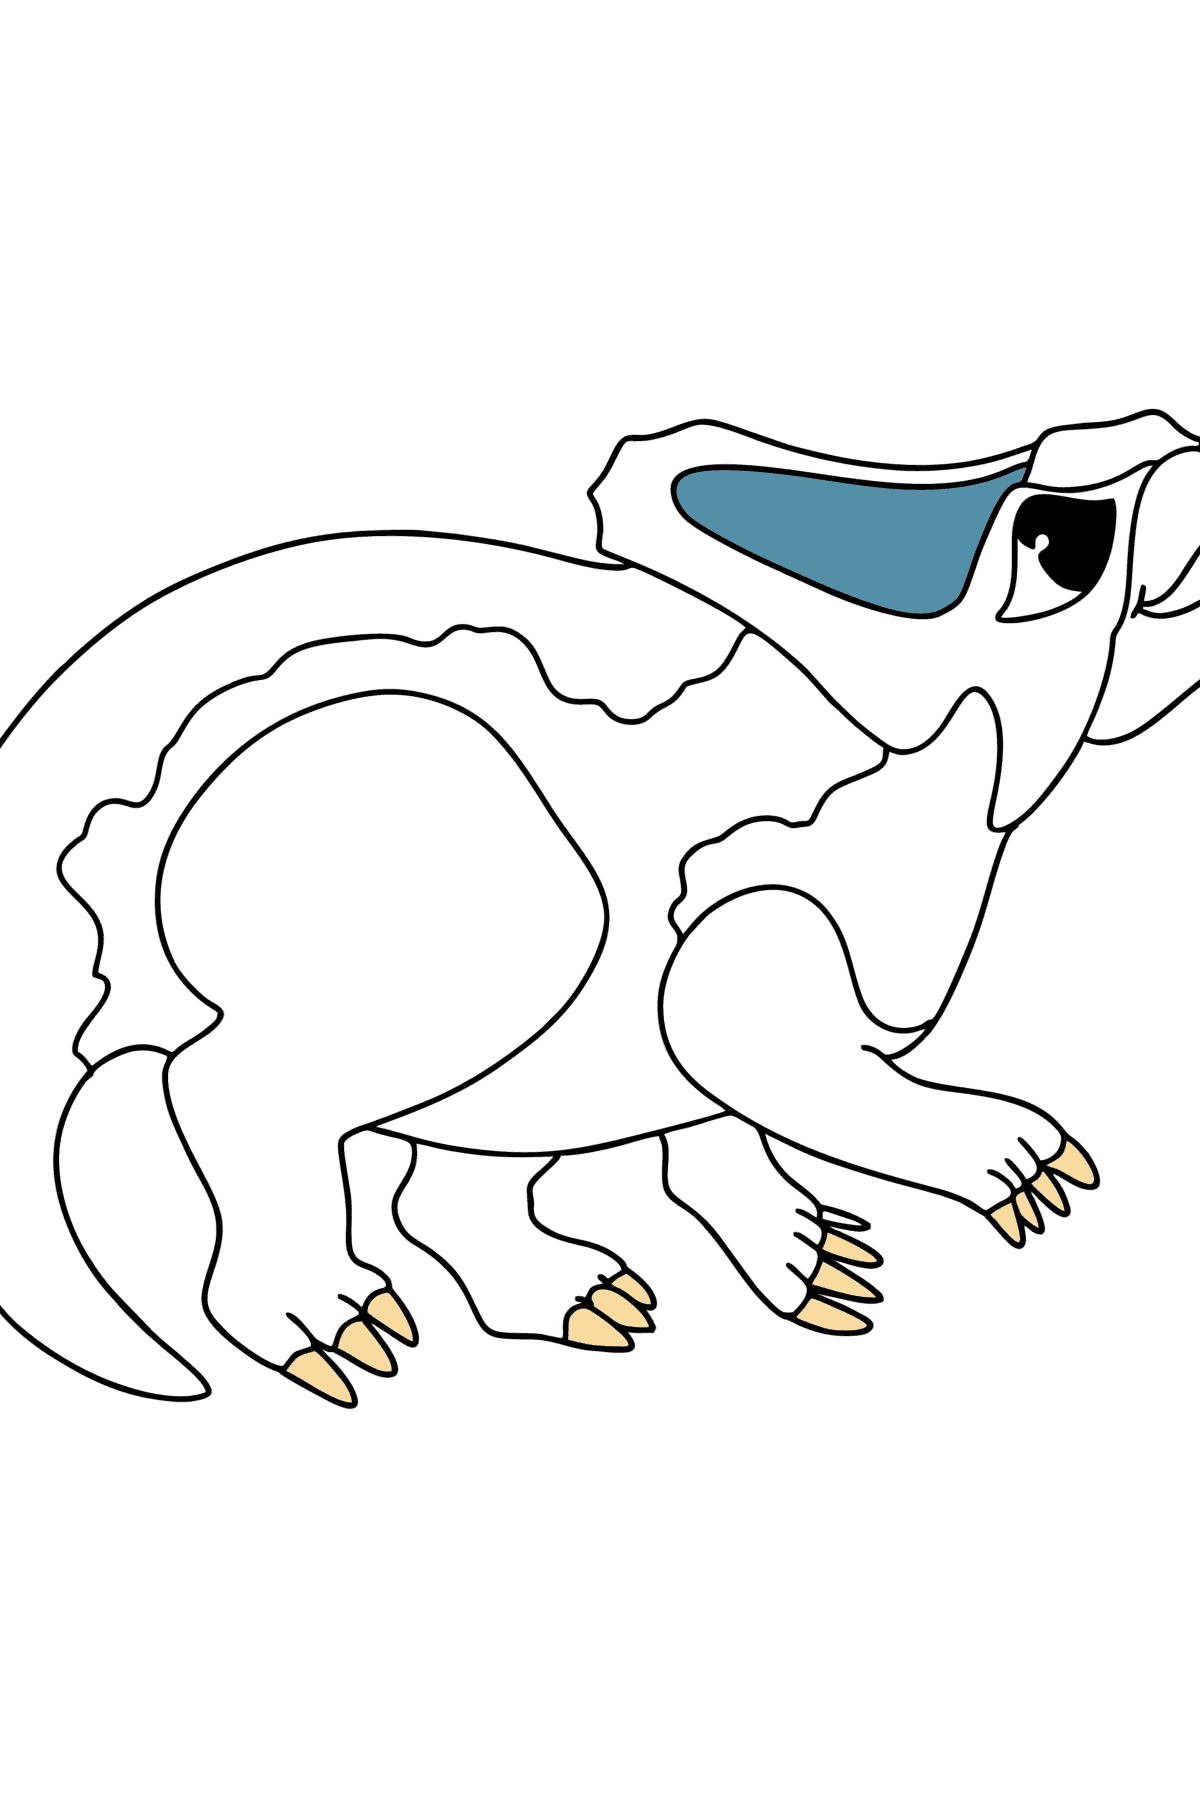 Boyama sayfası protoceratoplar - Boyamalar çocuklar için